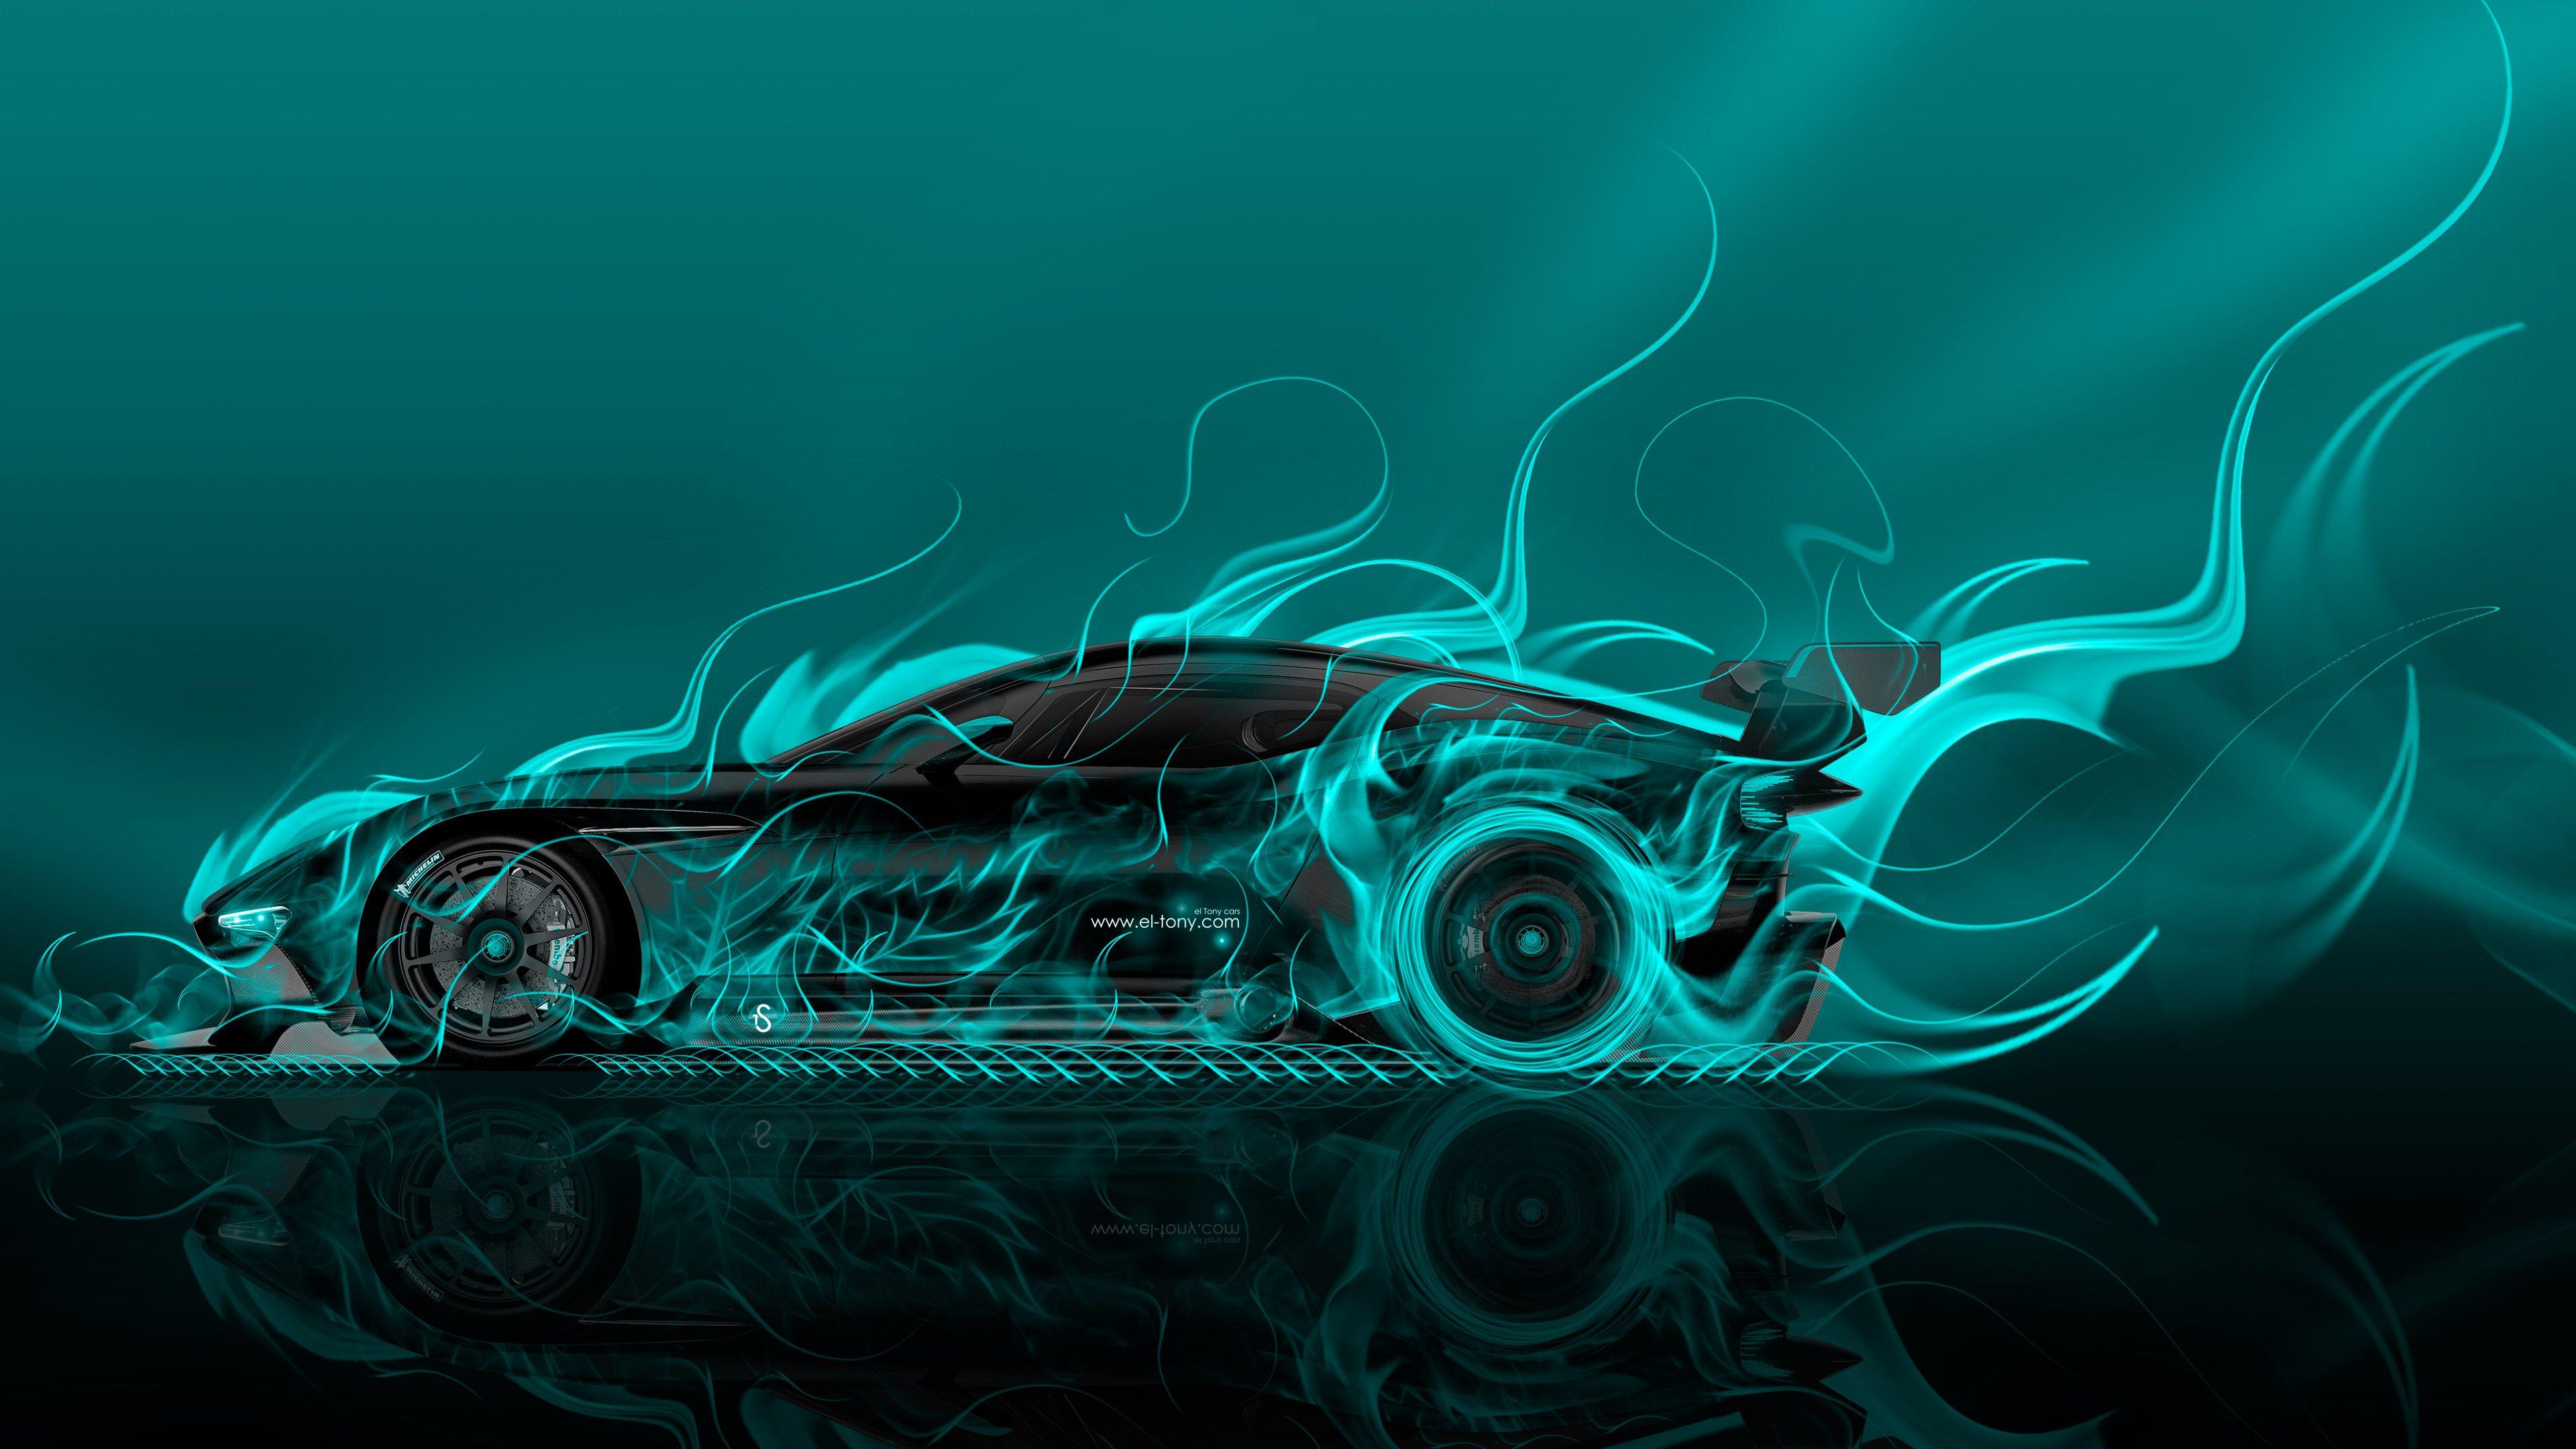 Aston Martin Vulcan Side Super Fire Abstract Car 2015 Wallpaper